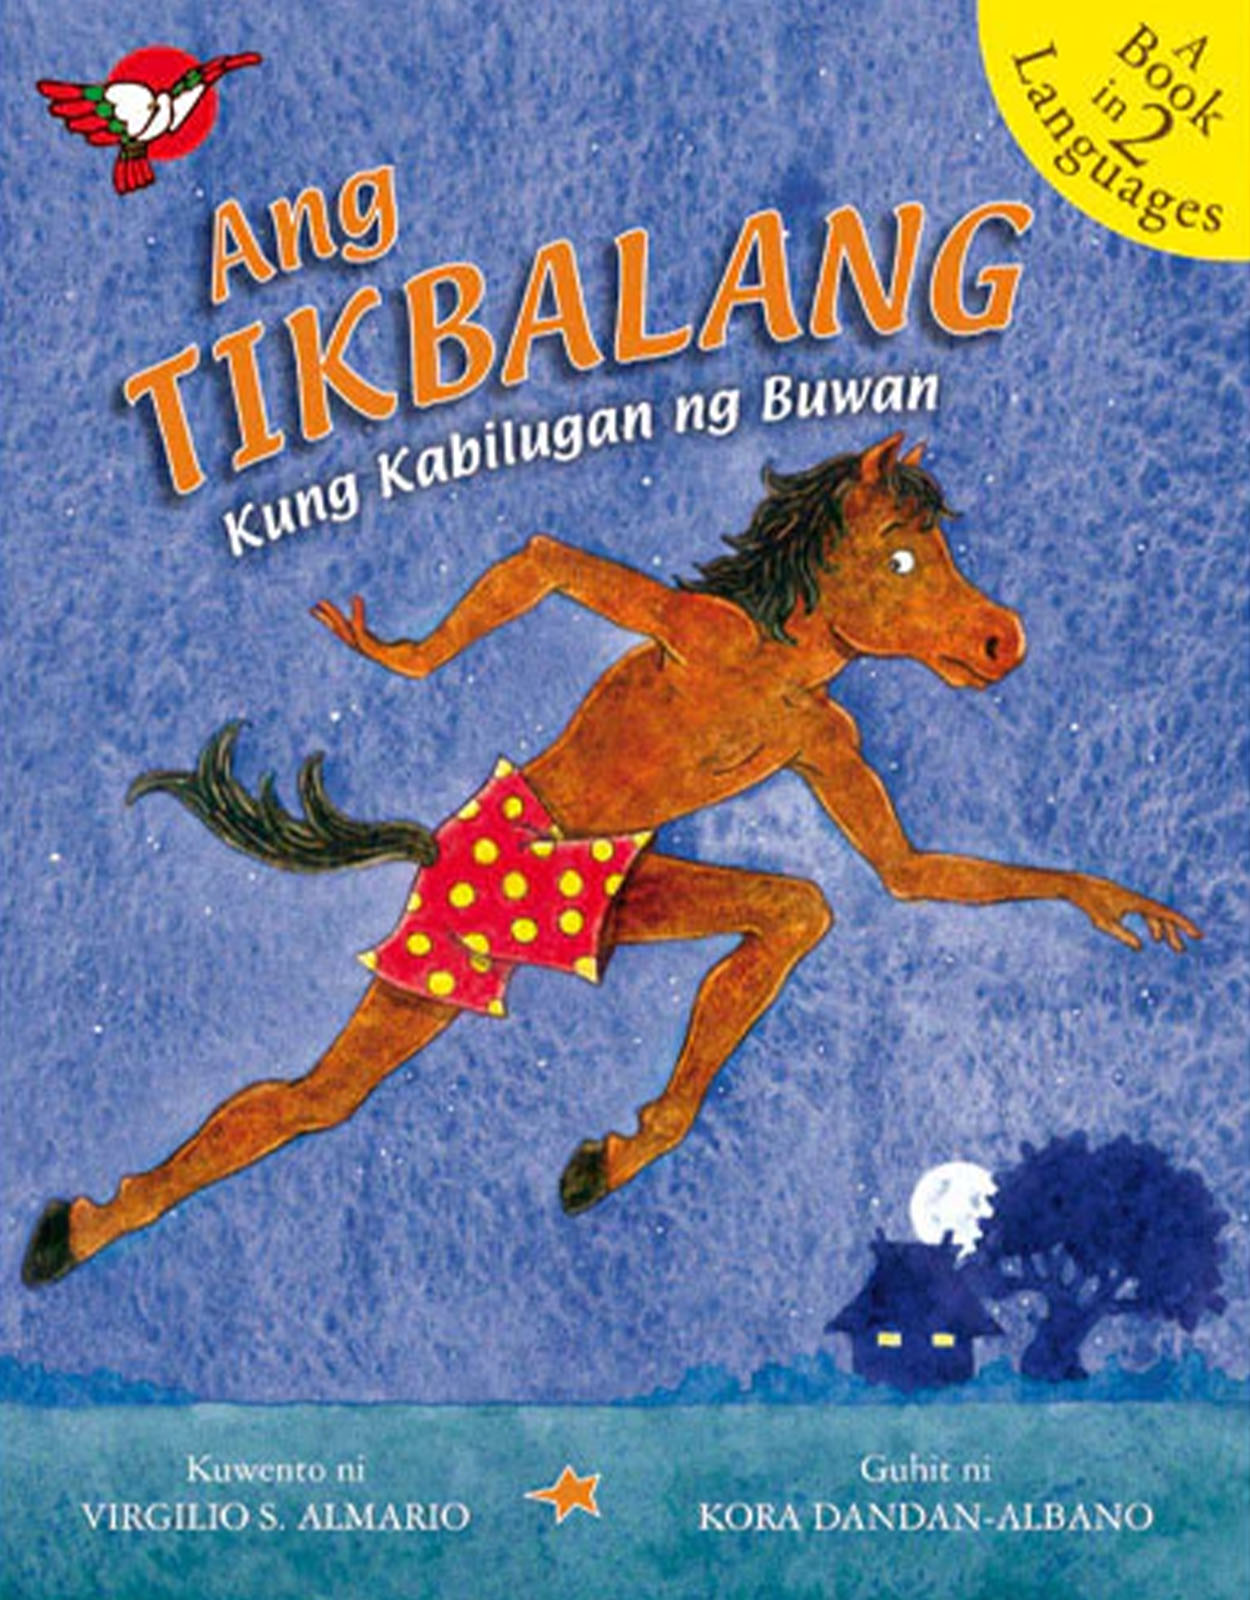 Tagalog Stories for Kids: Ang Tikbalang Kung Kabilugan ng Buwan